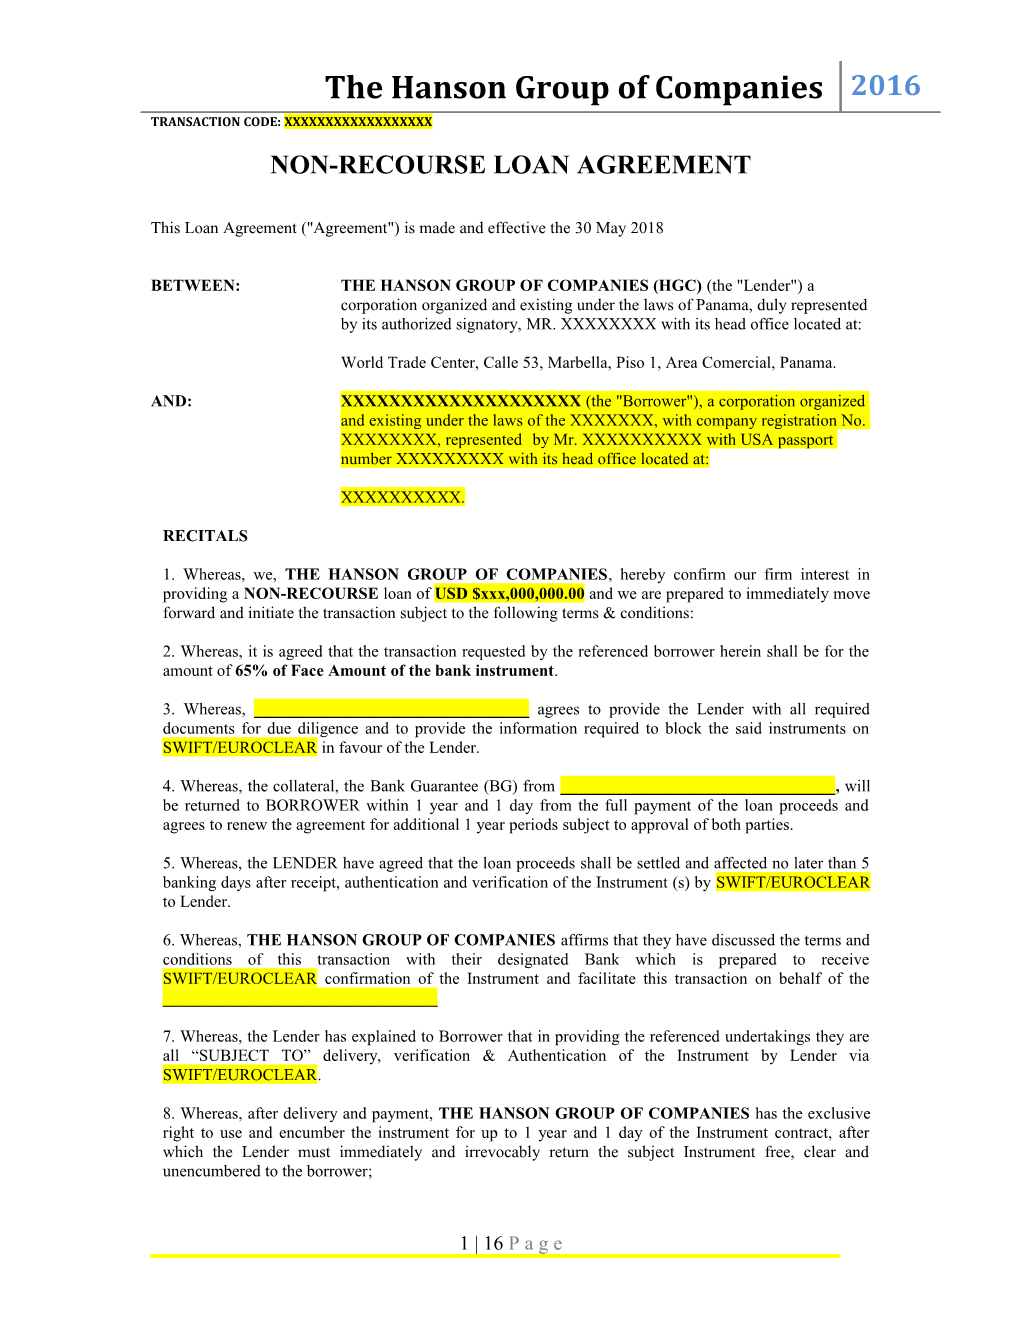 Non-Recourse Loan Agreement